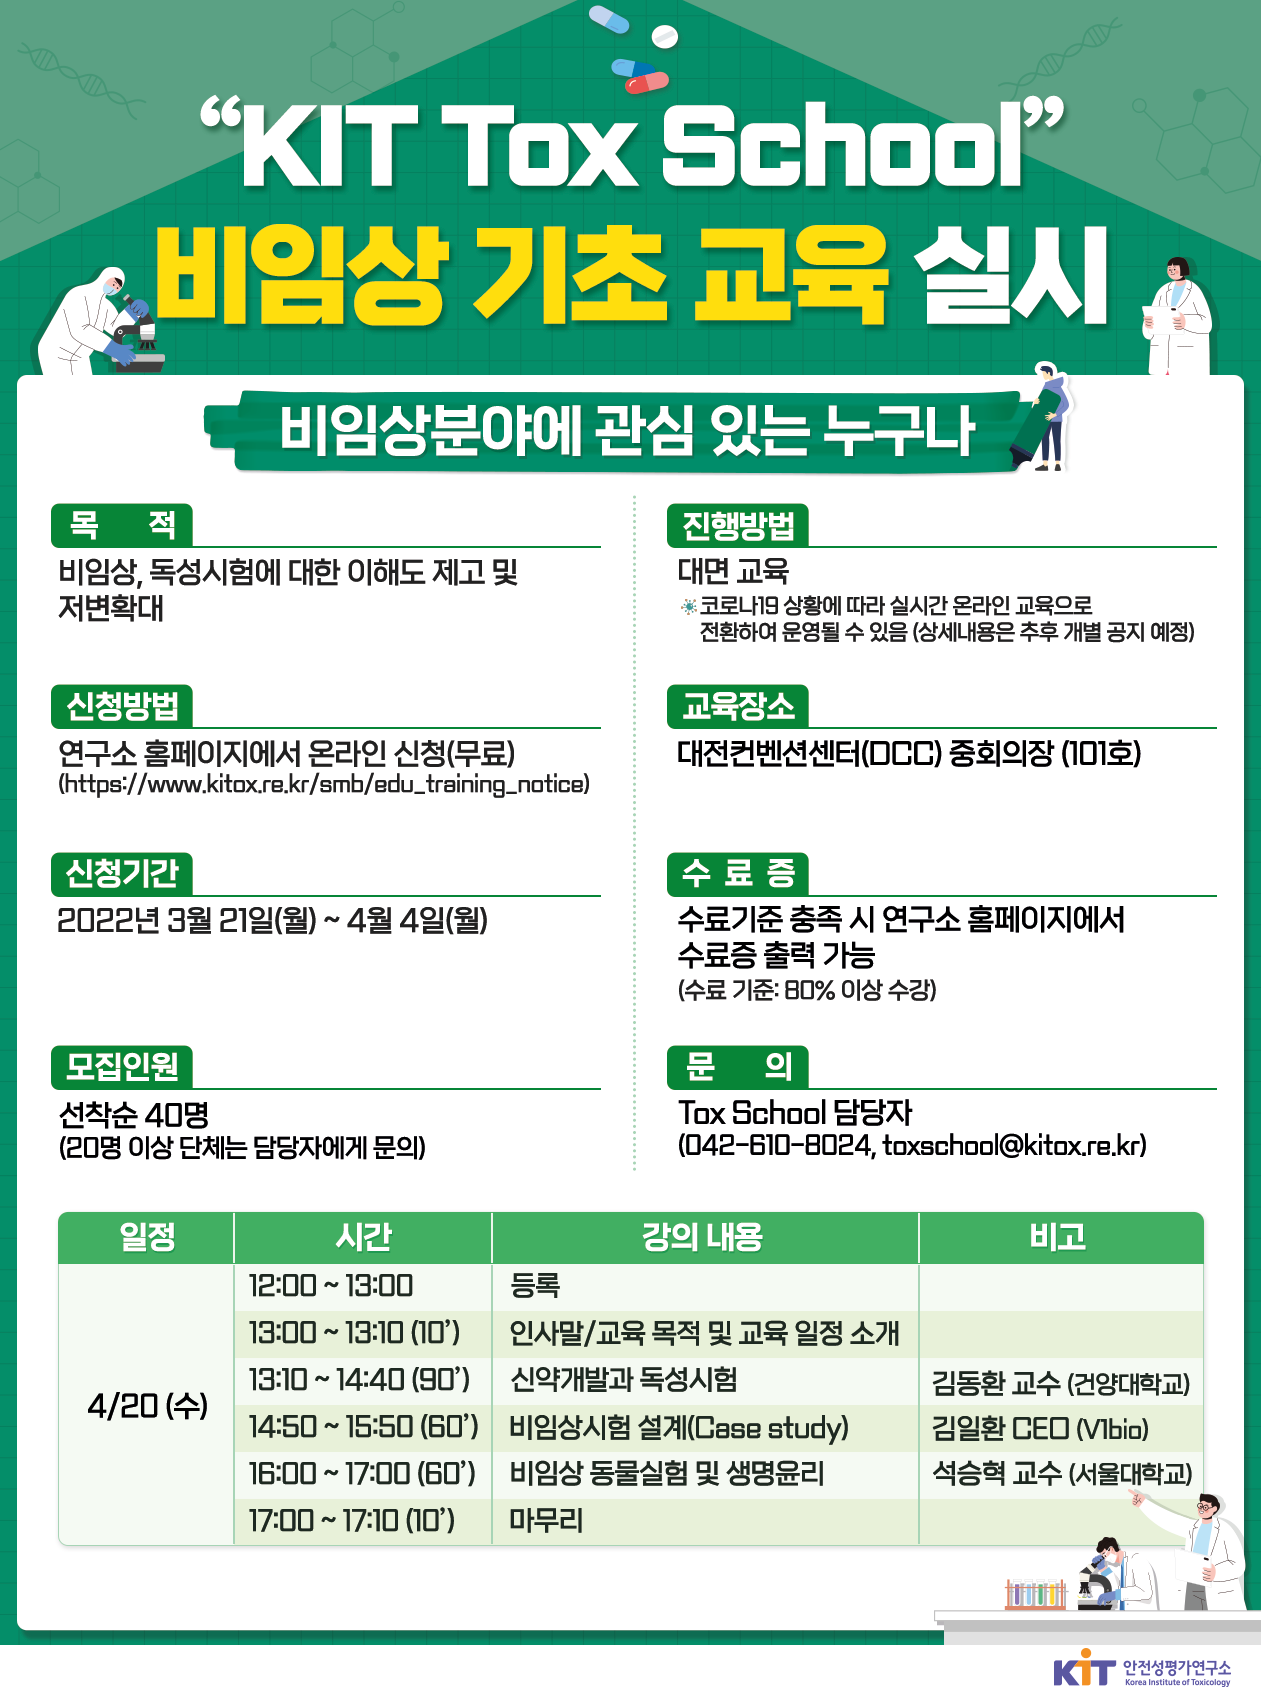 2022-1차 「KIT Tox School」 비임상 기초교육 개최 안내 및 홍보 요청